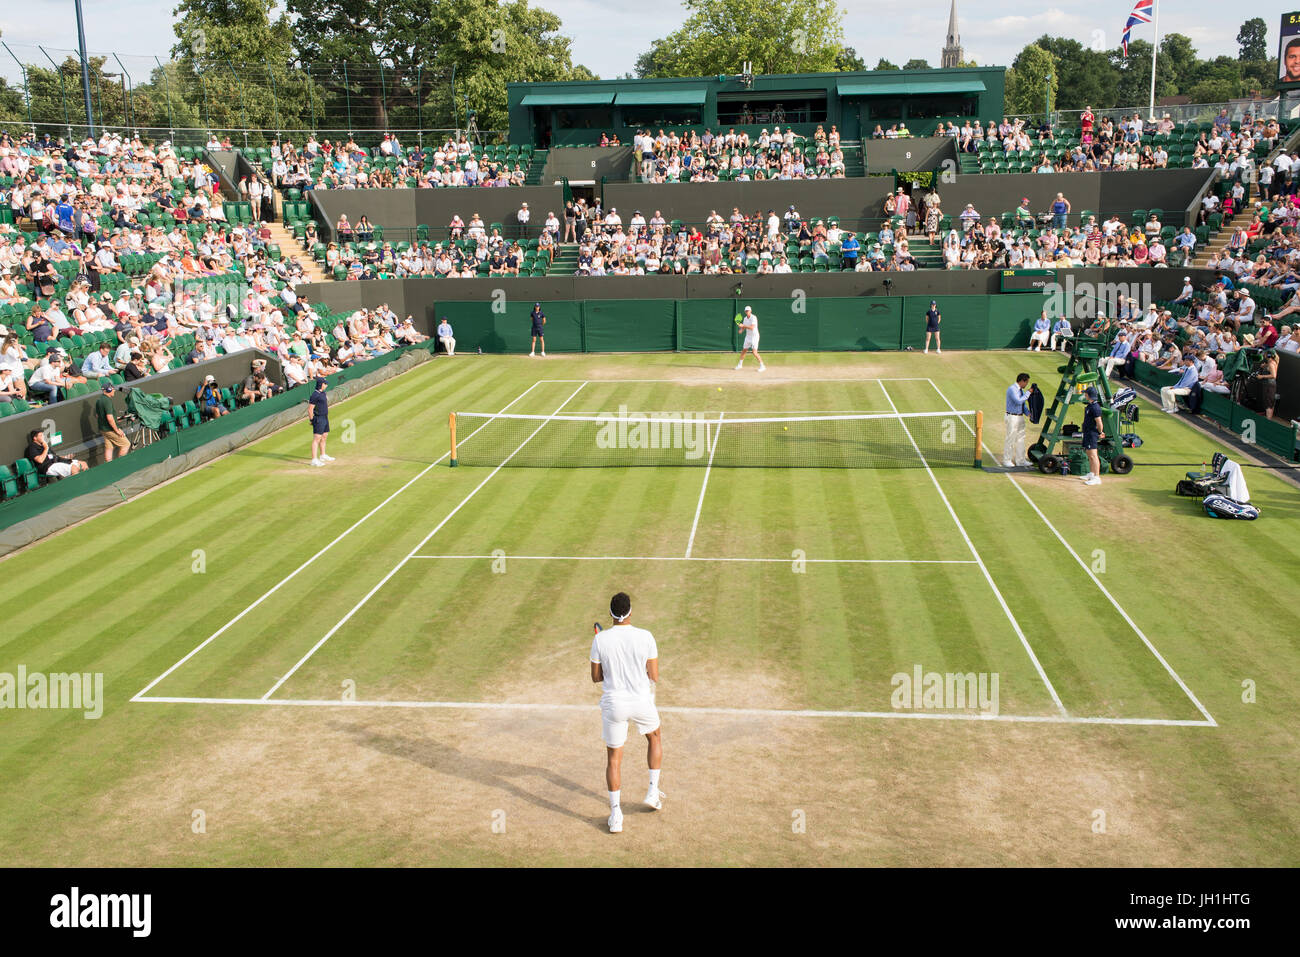 Londres, Reino Unido - Julio 2017: Tribunal nº 2. de los campeonatos de Wimbledon, llena de espectadores viendo el partido de tenis en curso Foto de stock